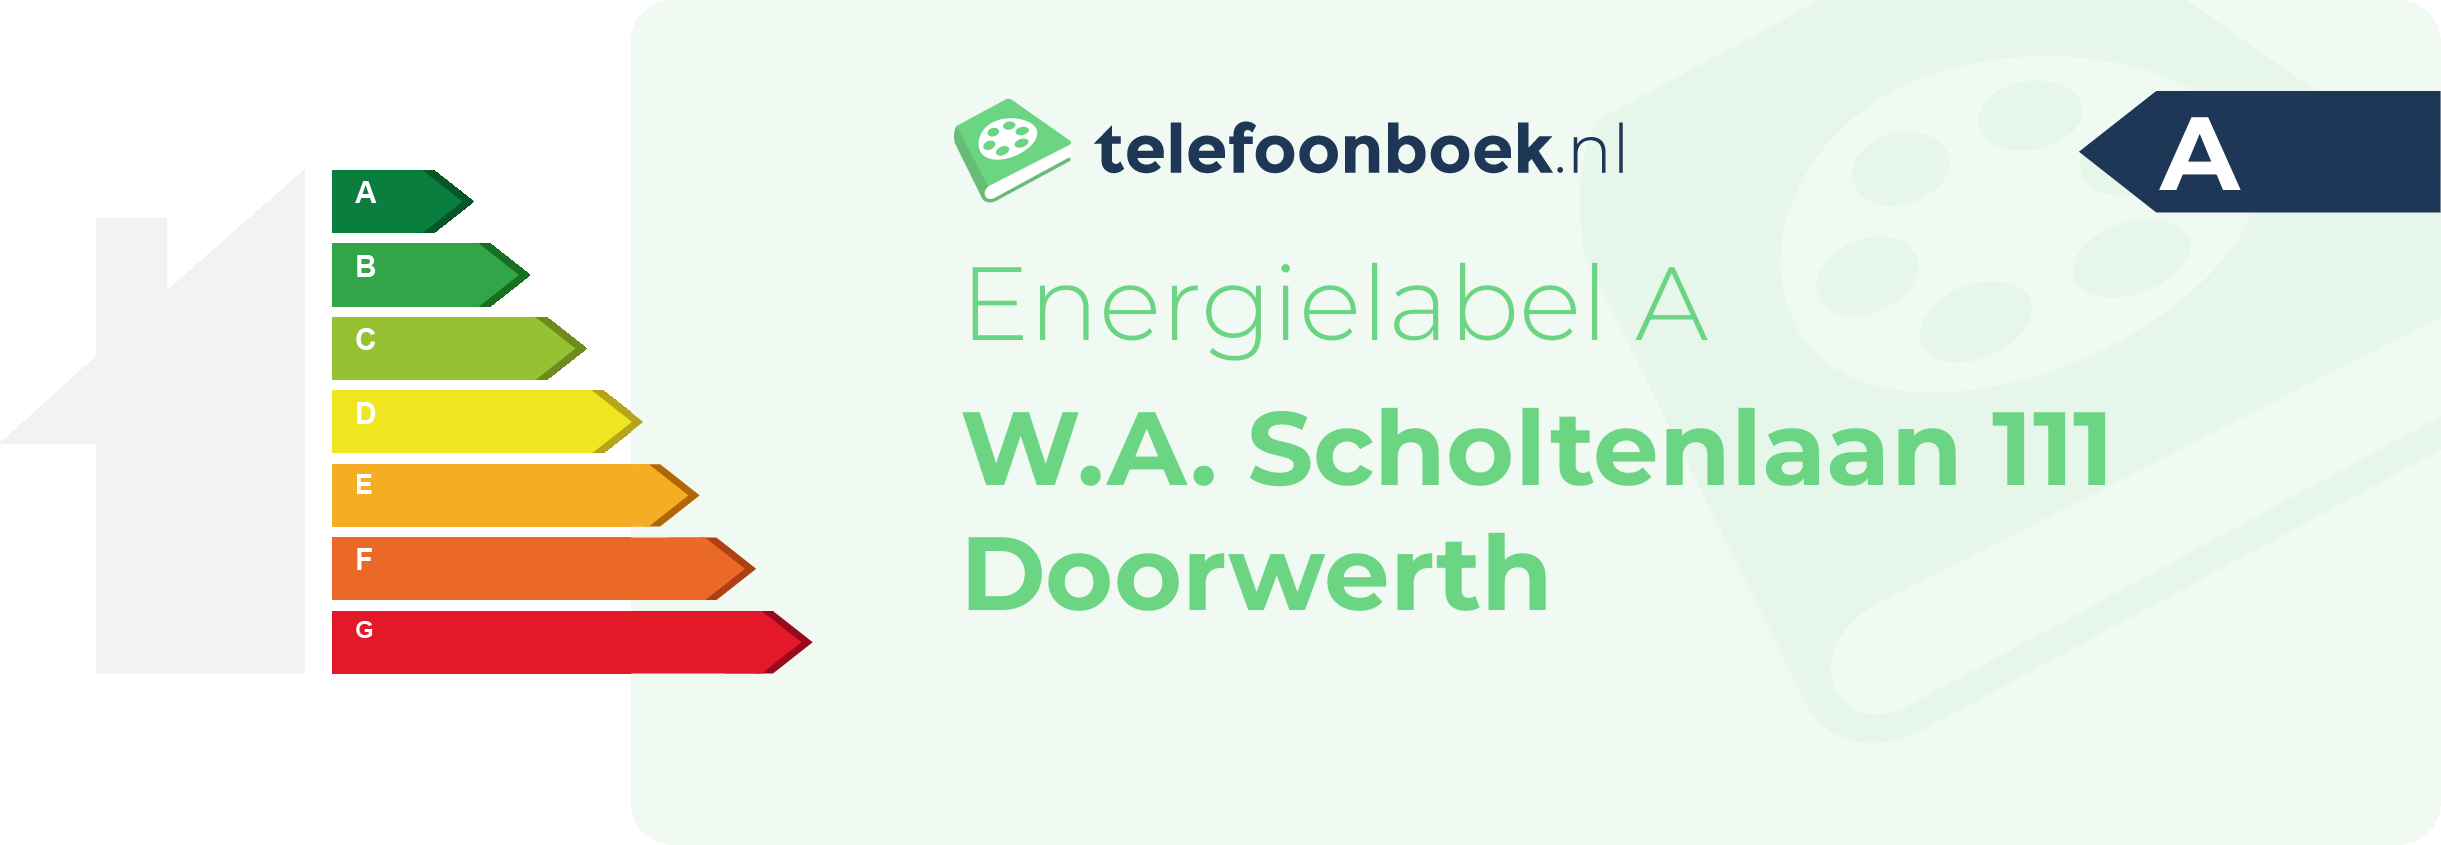 Energielabel W.A. Scholtenlaan 111 Doorwerth